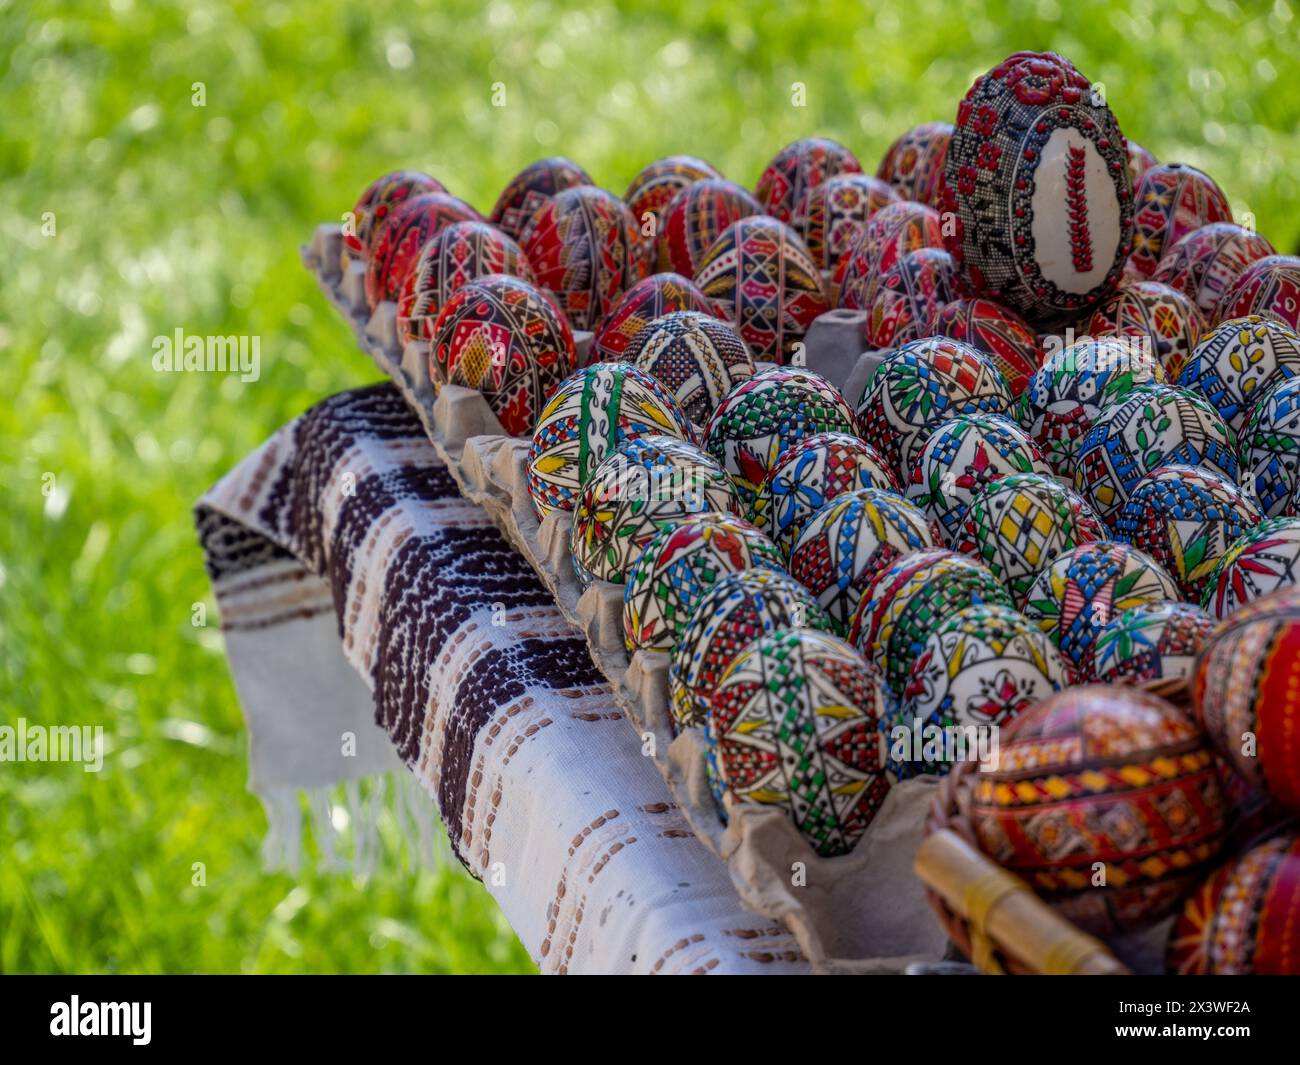 groupe d'oeufs de pâques orthodoxes roumains décorés exposés Banque D'Images